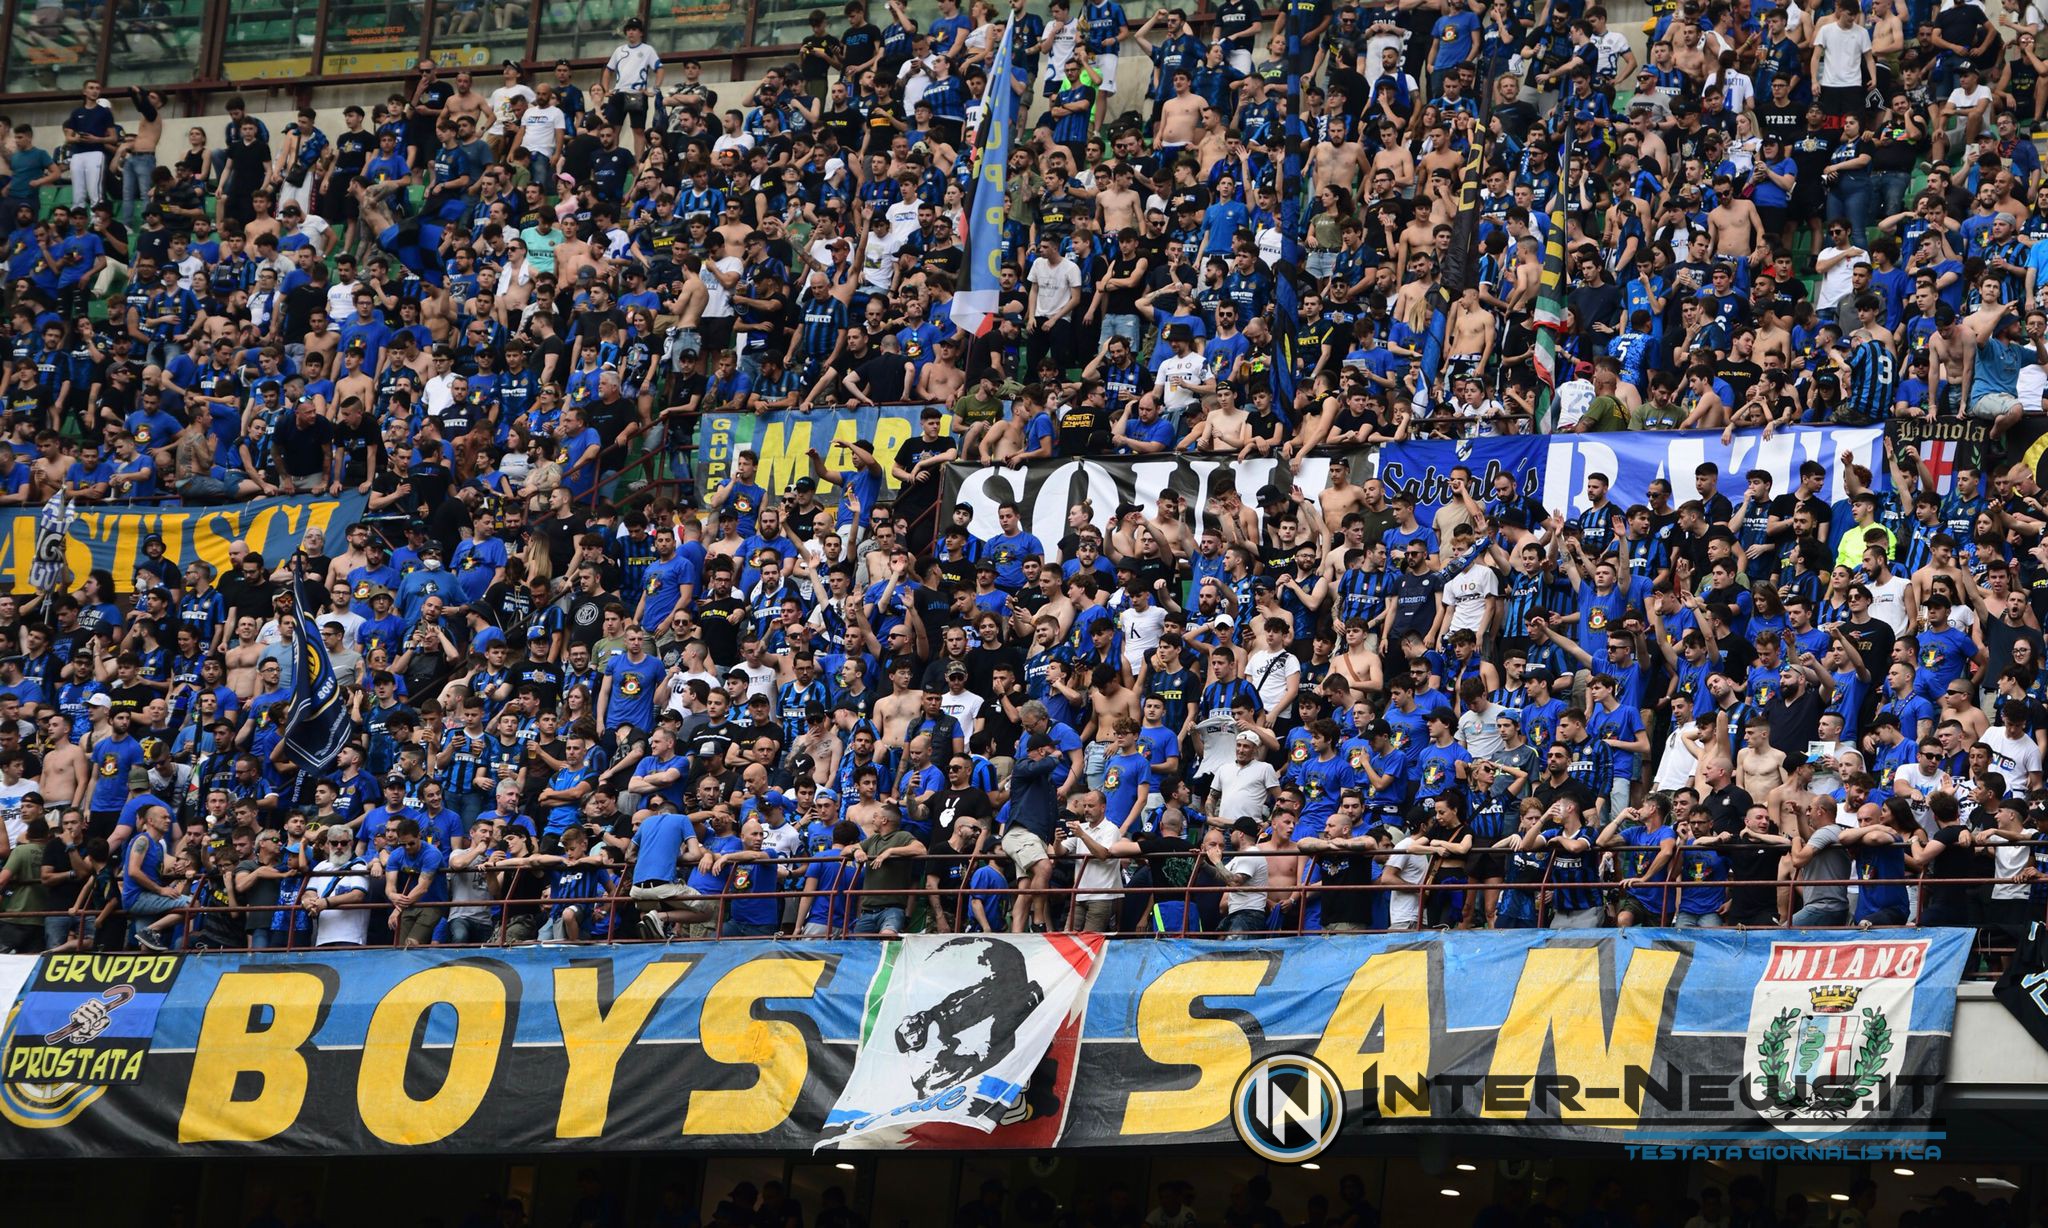 Inter, Inter-Sanpdoria